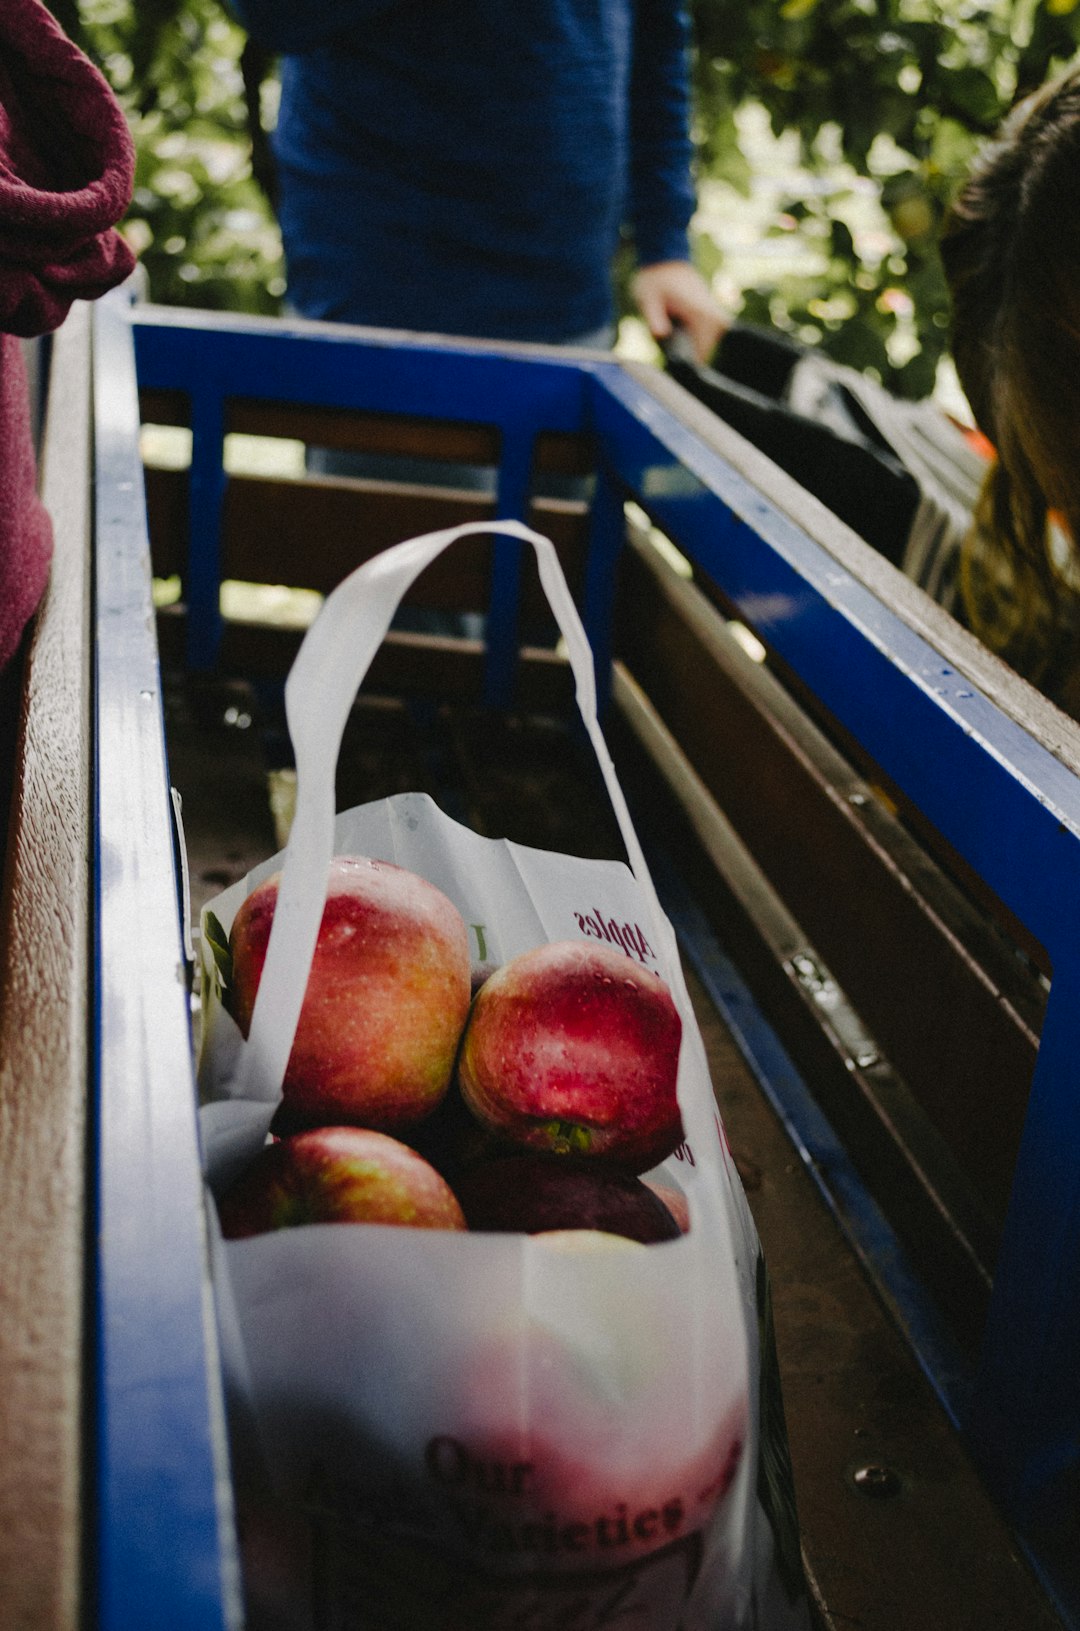 ilama, Harvest, apples in plastic bag